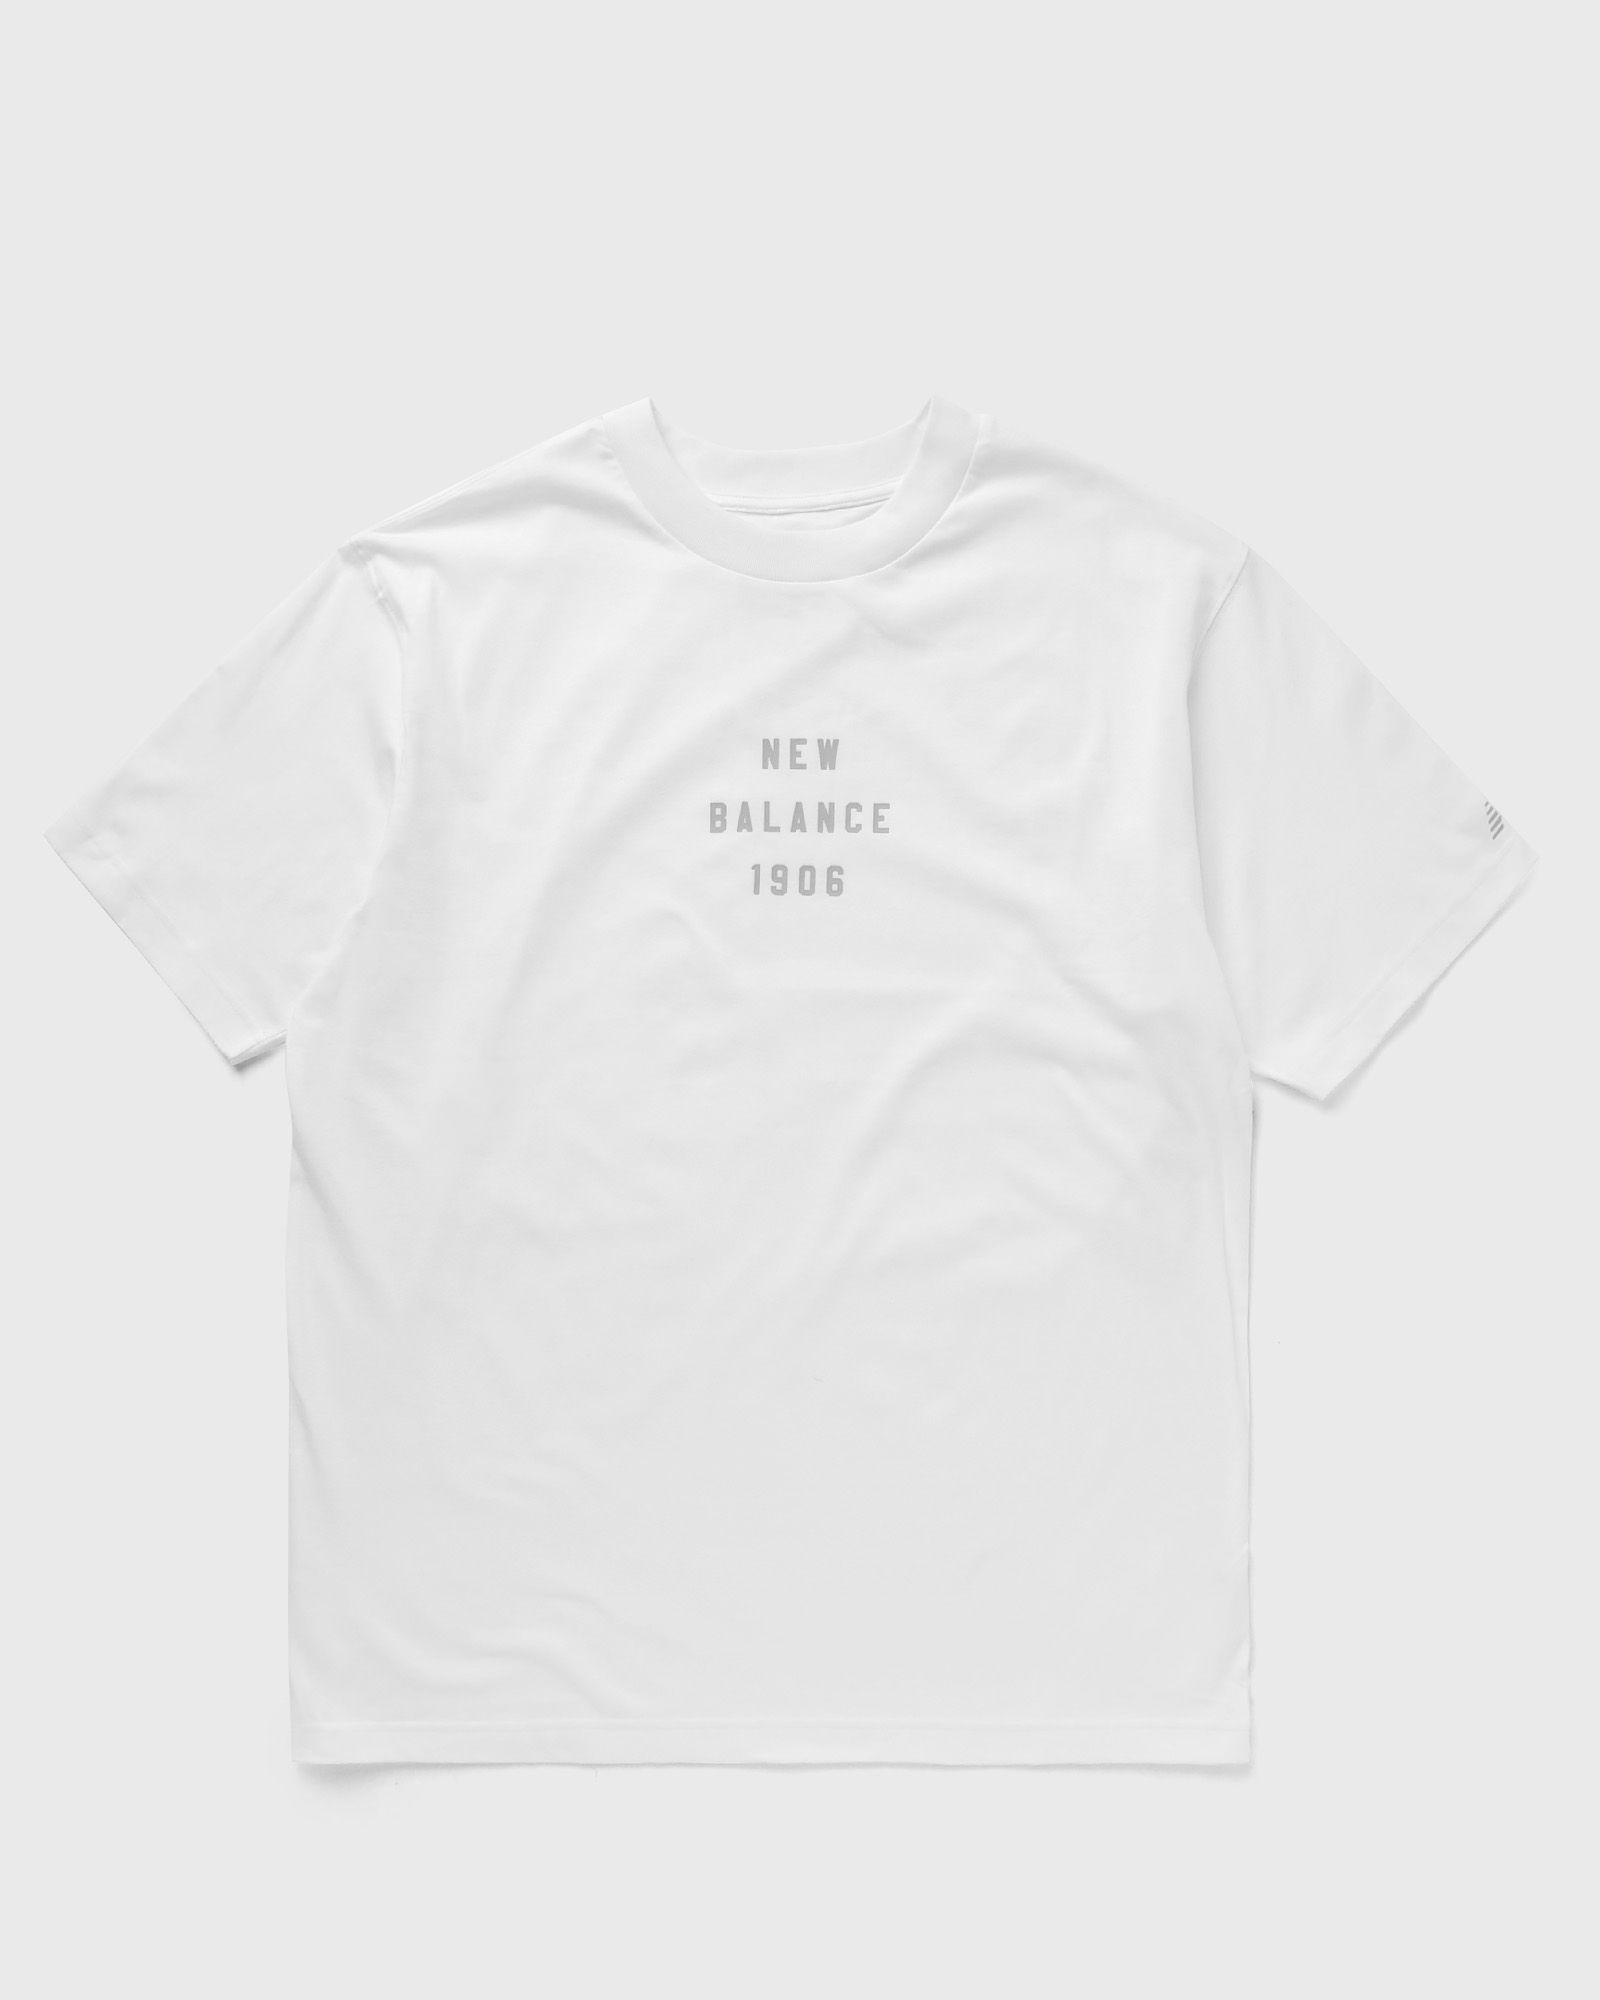 New Balance - graphic t-shirt men shortsleeves white in größe:xxl